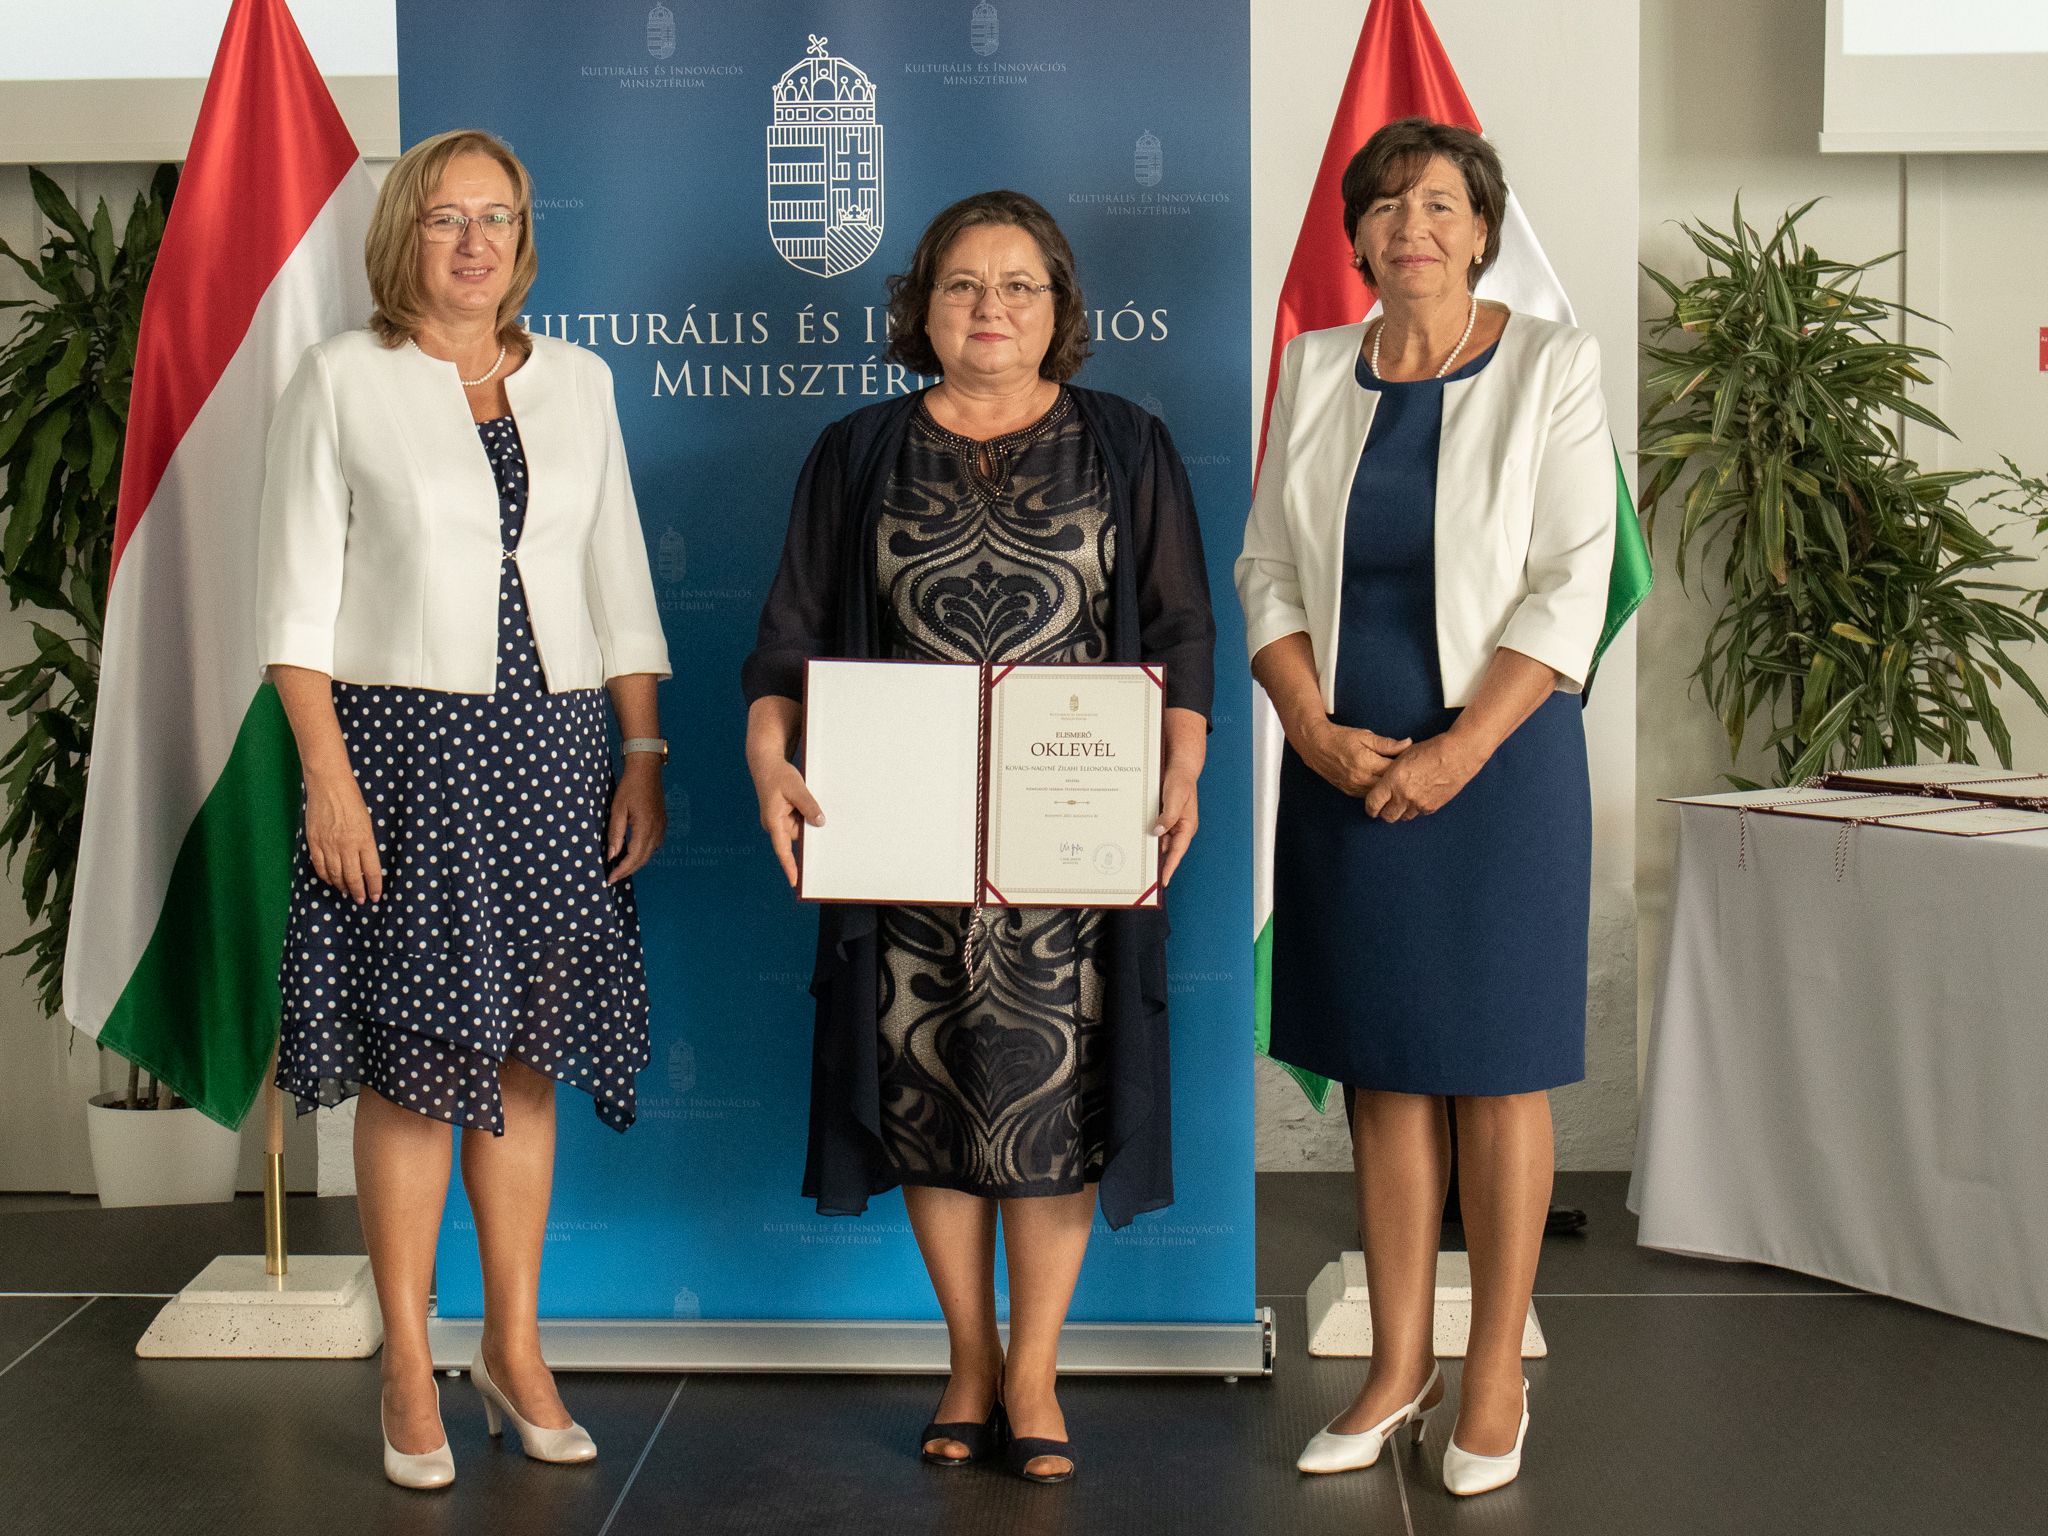 Magas rangú elismerést vehetett át a Debreceni Szakképzési Centrum gazdasági vezető, kancellárhelyettes asszonya